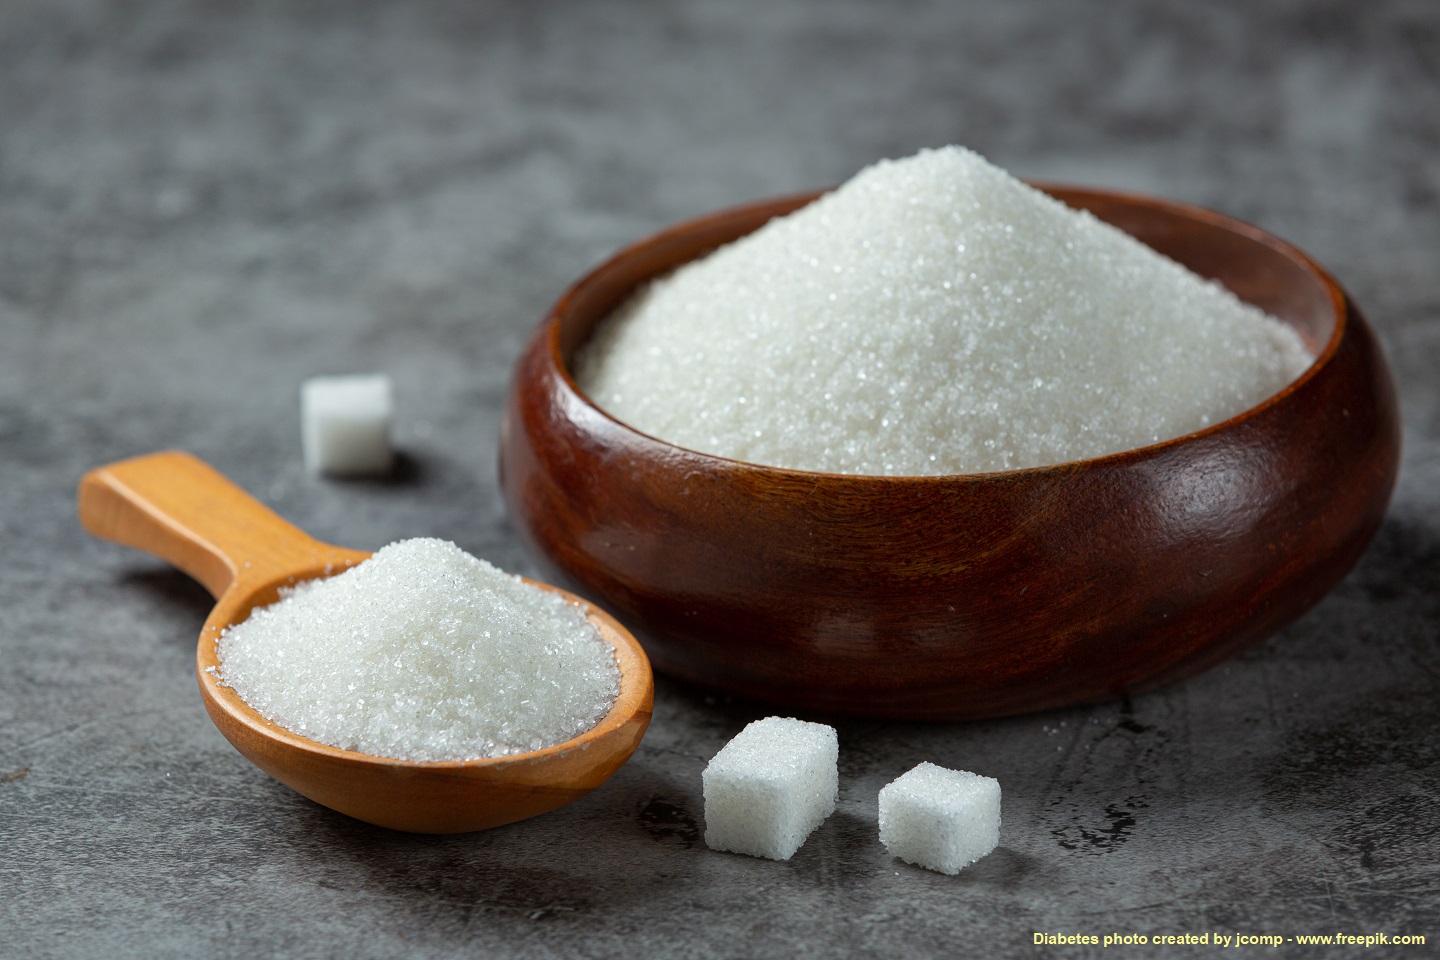 ฟิลิปปินส์เตรียมนำเข้าน้ำตาลทราย 4.5 แสนตัน ในปี 2566